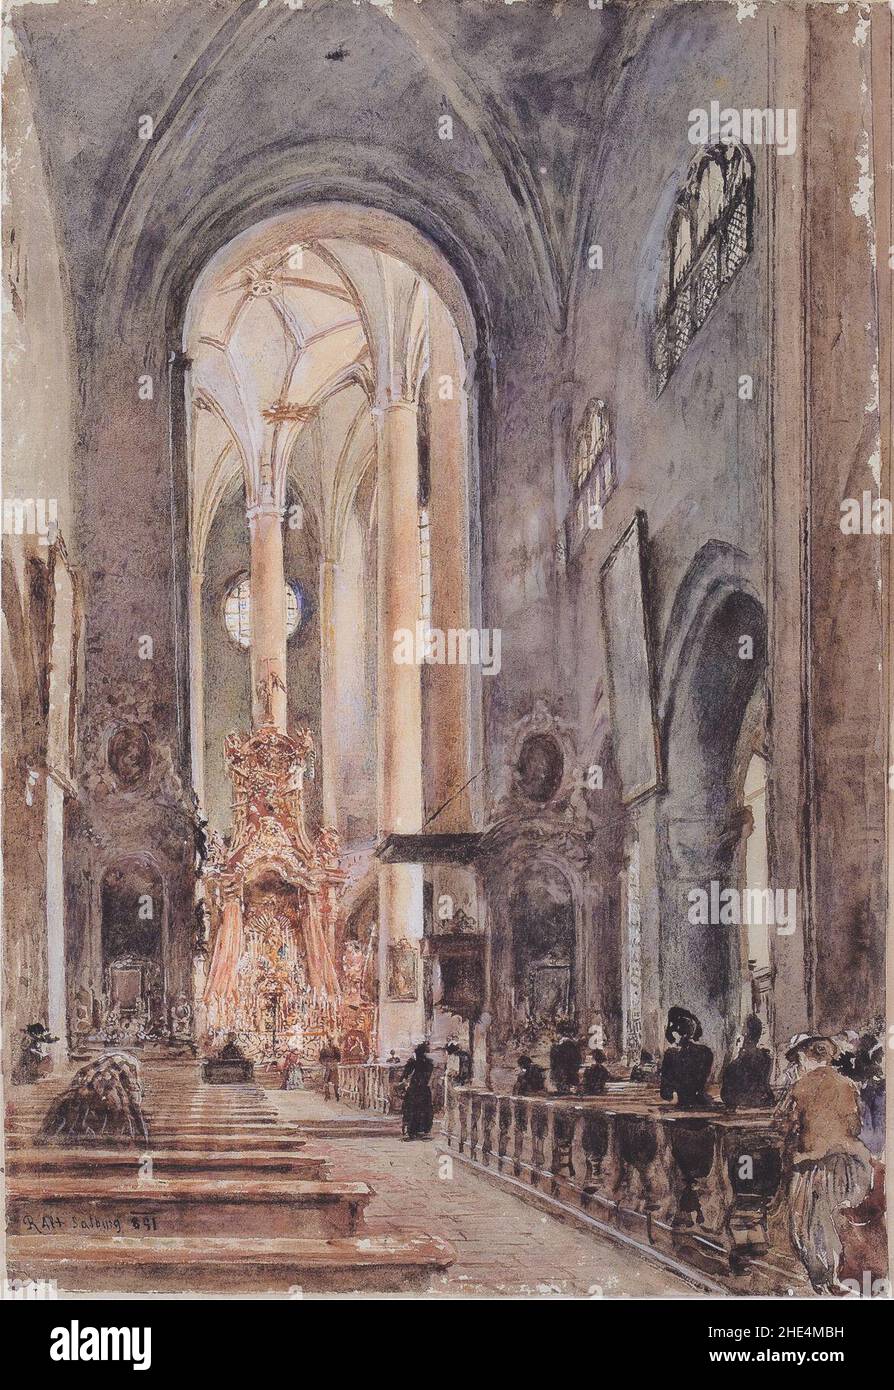 Rudolf von Alt - Die Franziskanerkirche in Salzburg - 1891. Stock Photo